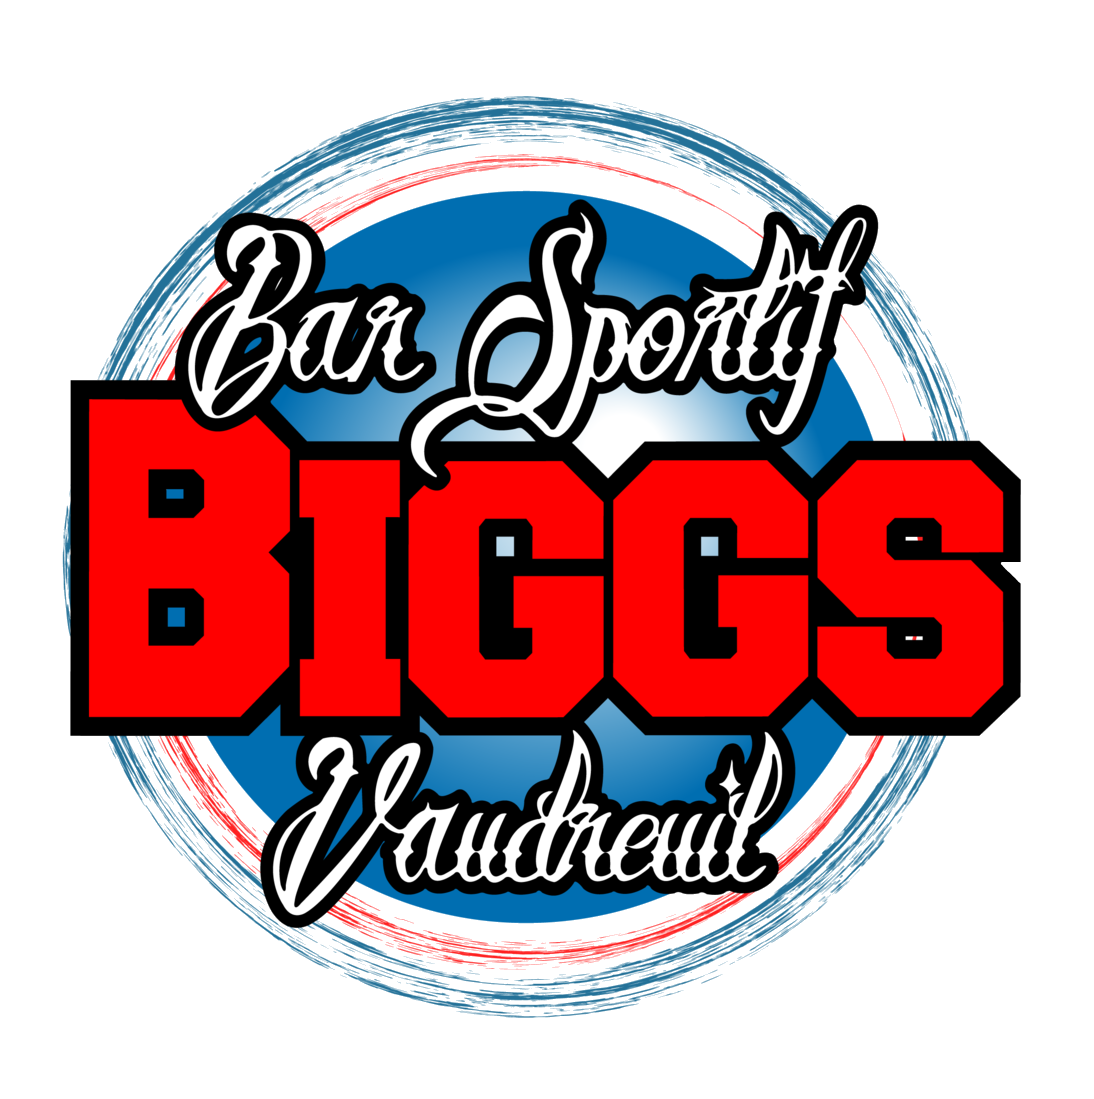 Bar Sportif Biggs